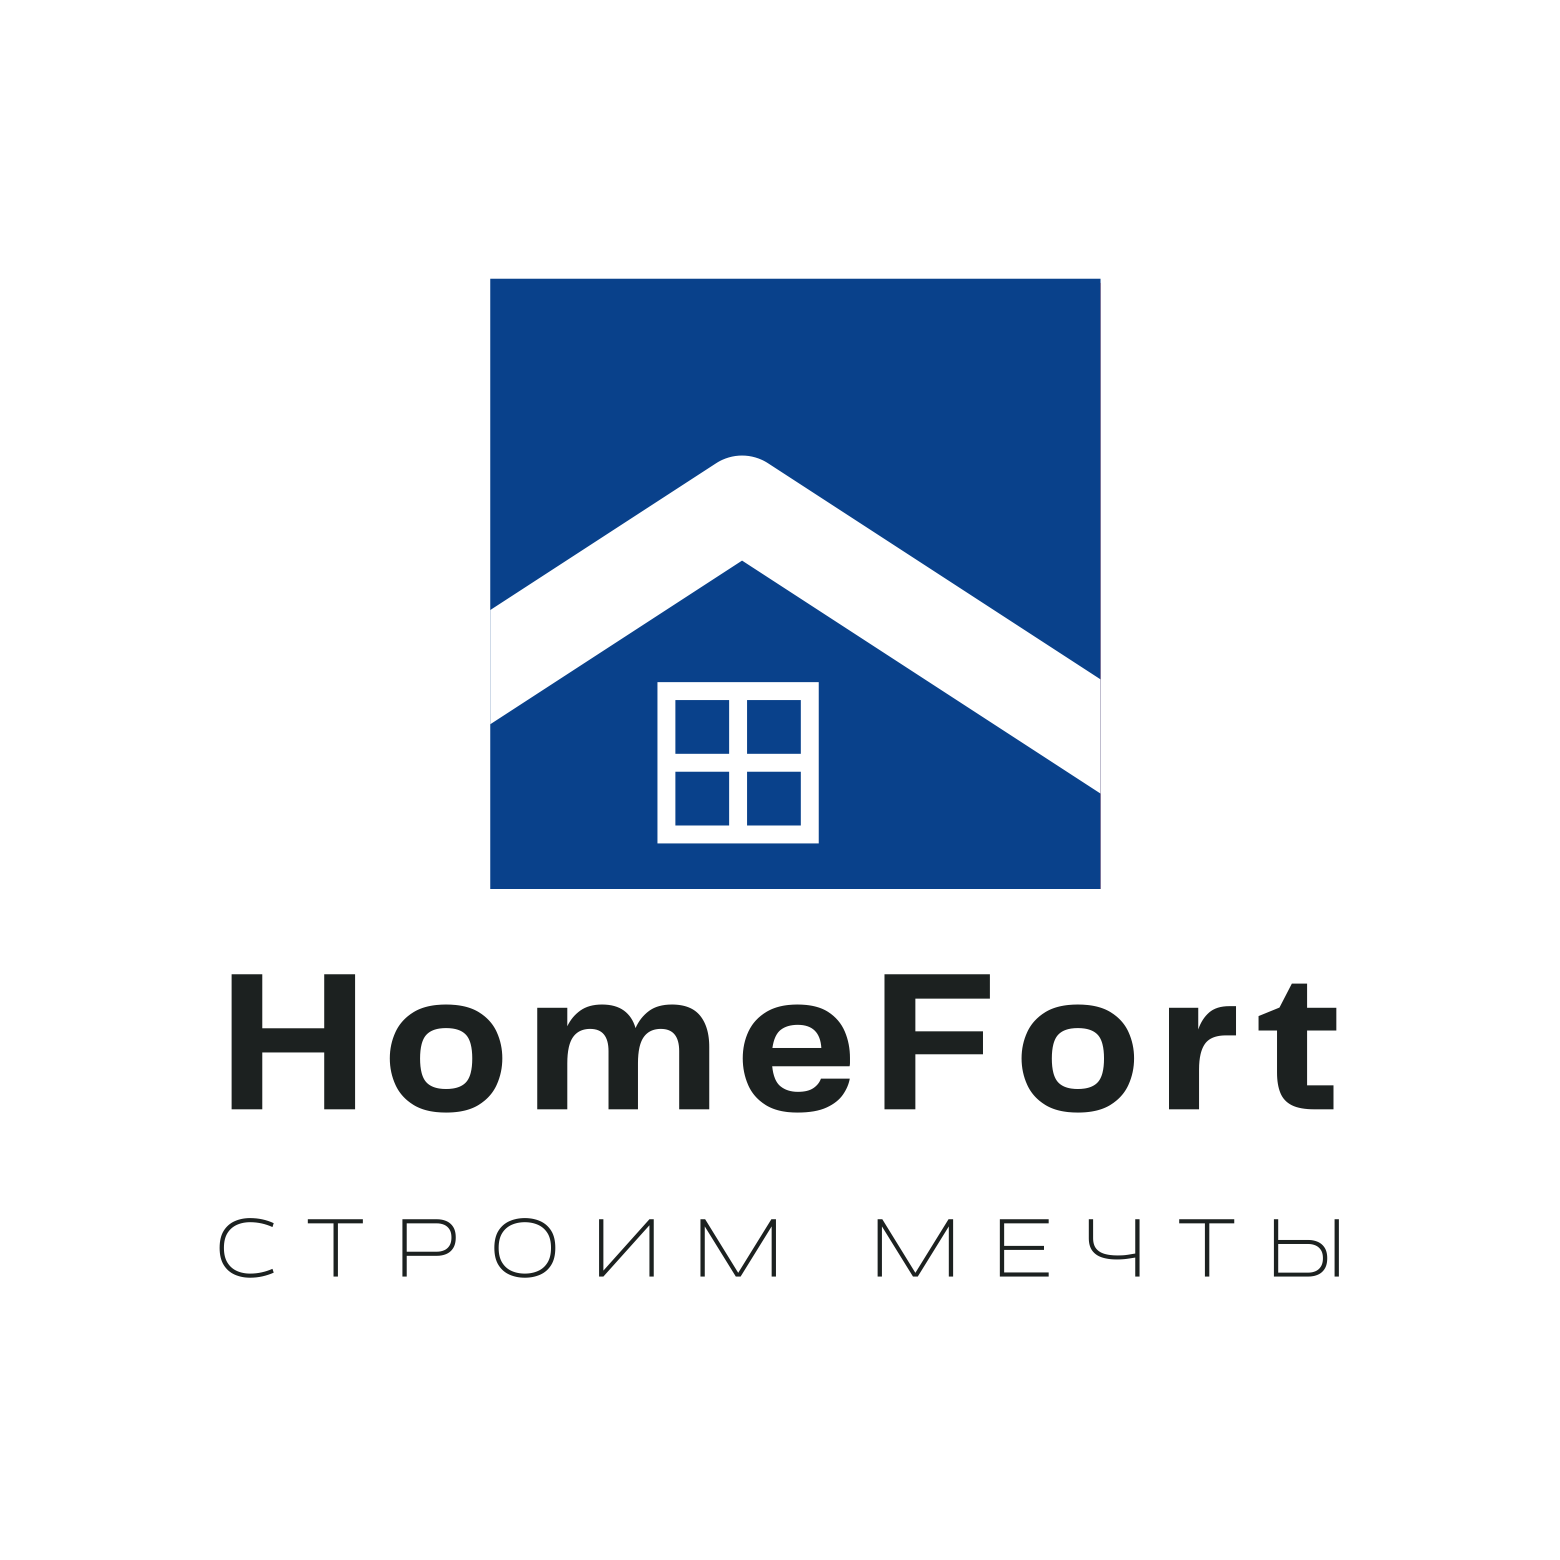 HomeFort